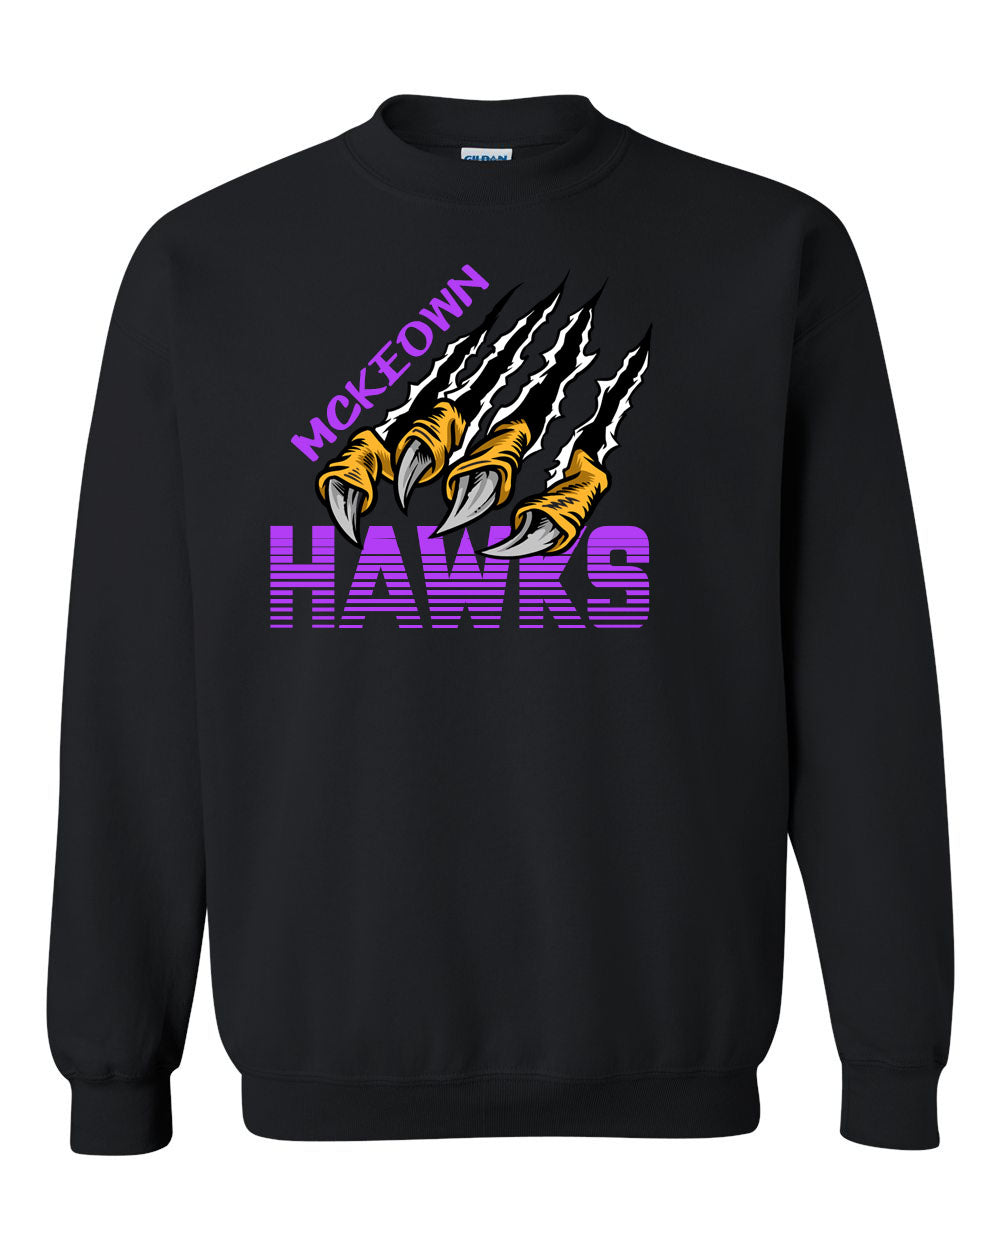 Hawk Claws non hooded sweatshirt